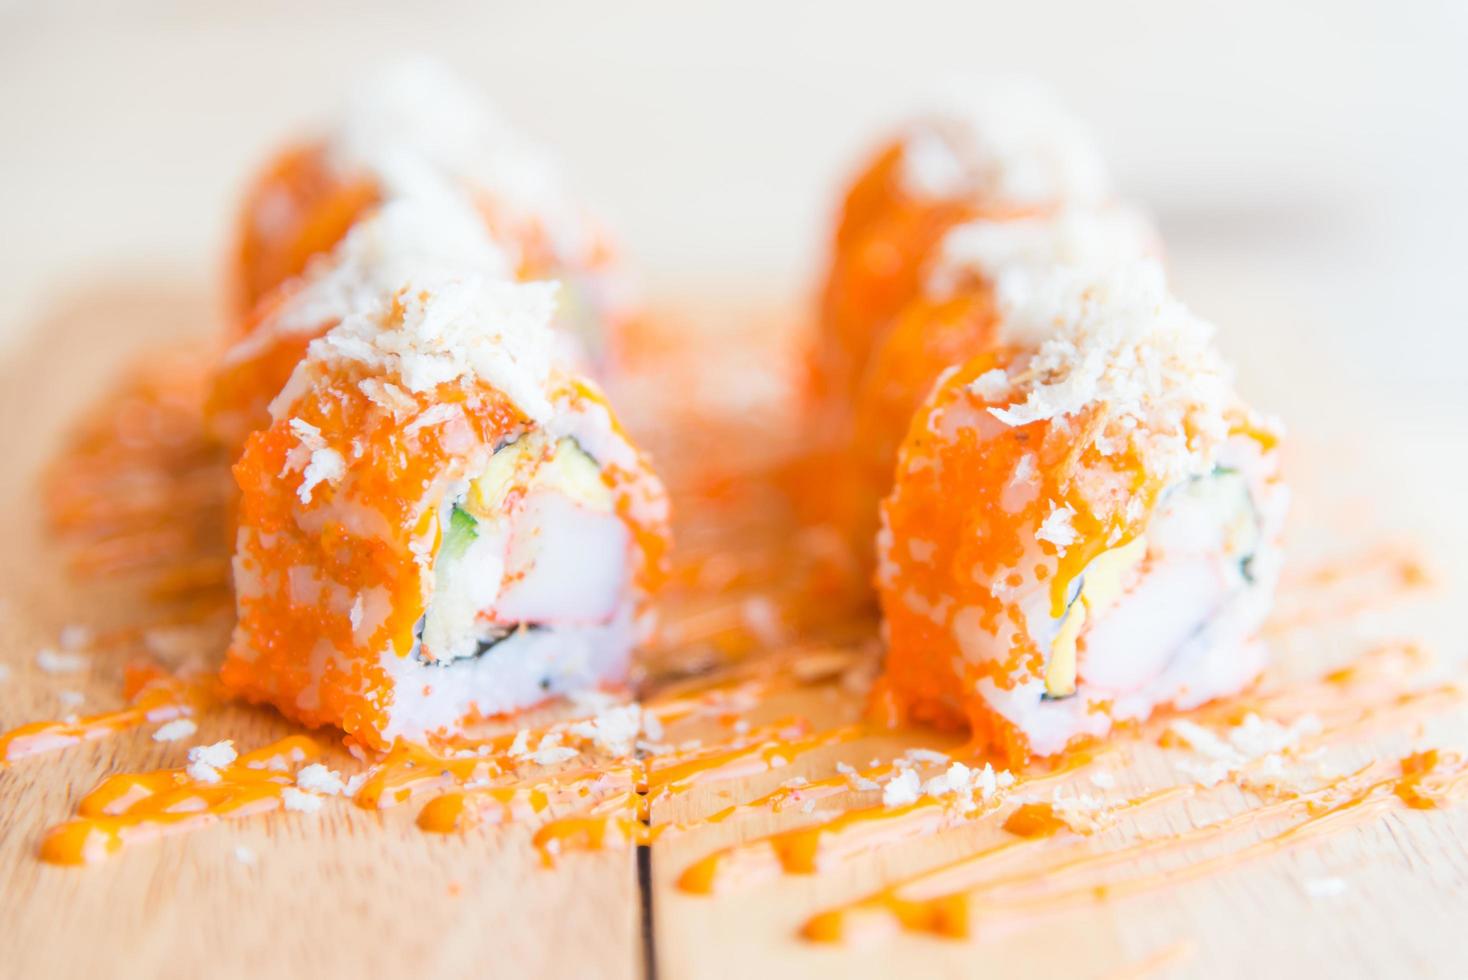 rotolo di sushi al salmone, cibo tradizionale giapponese foto